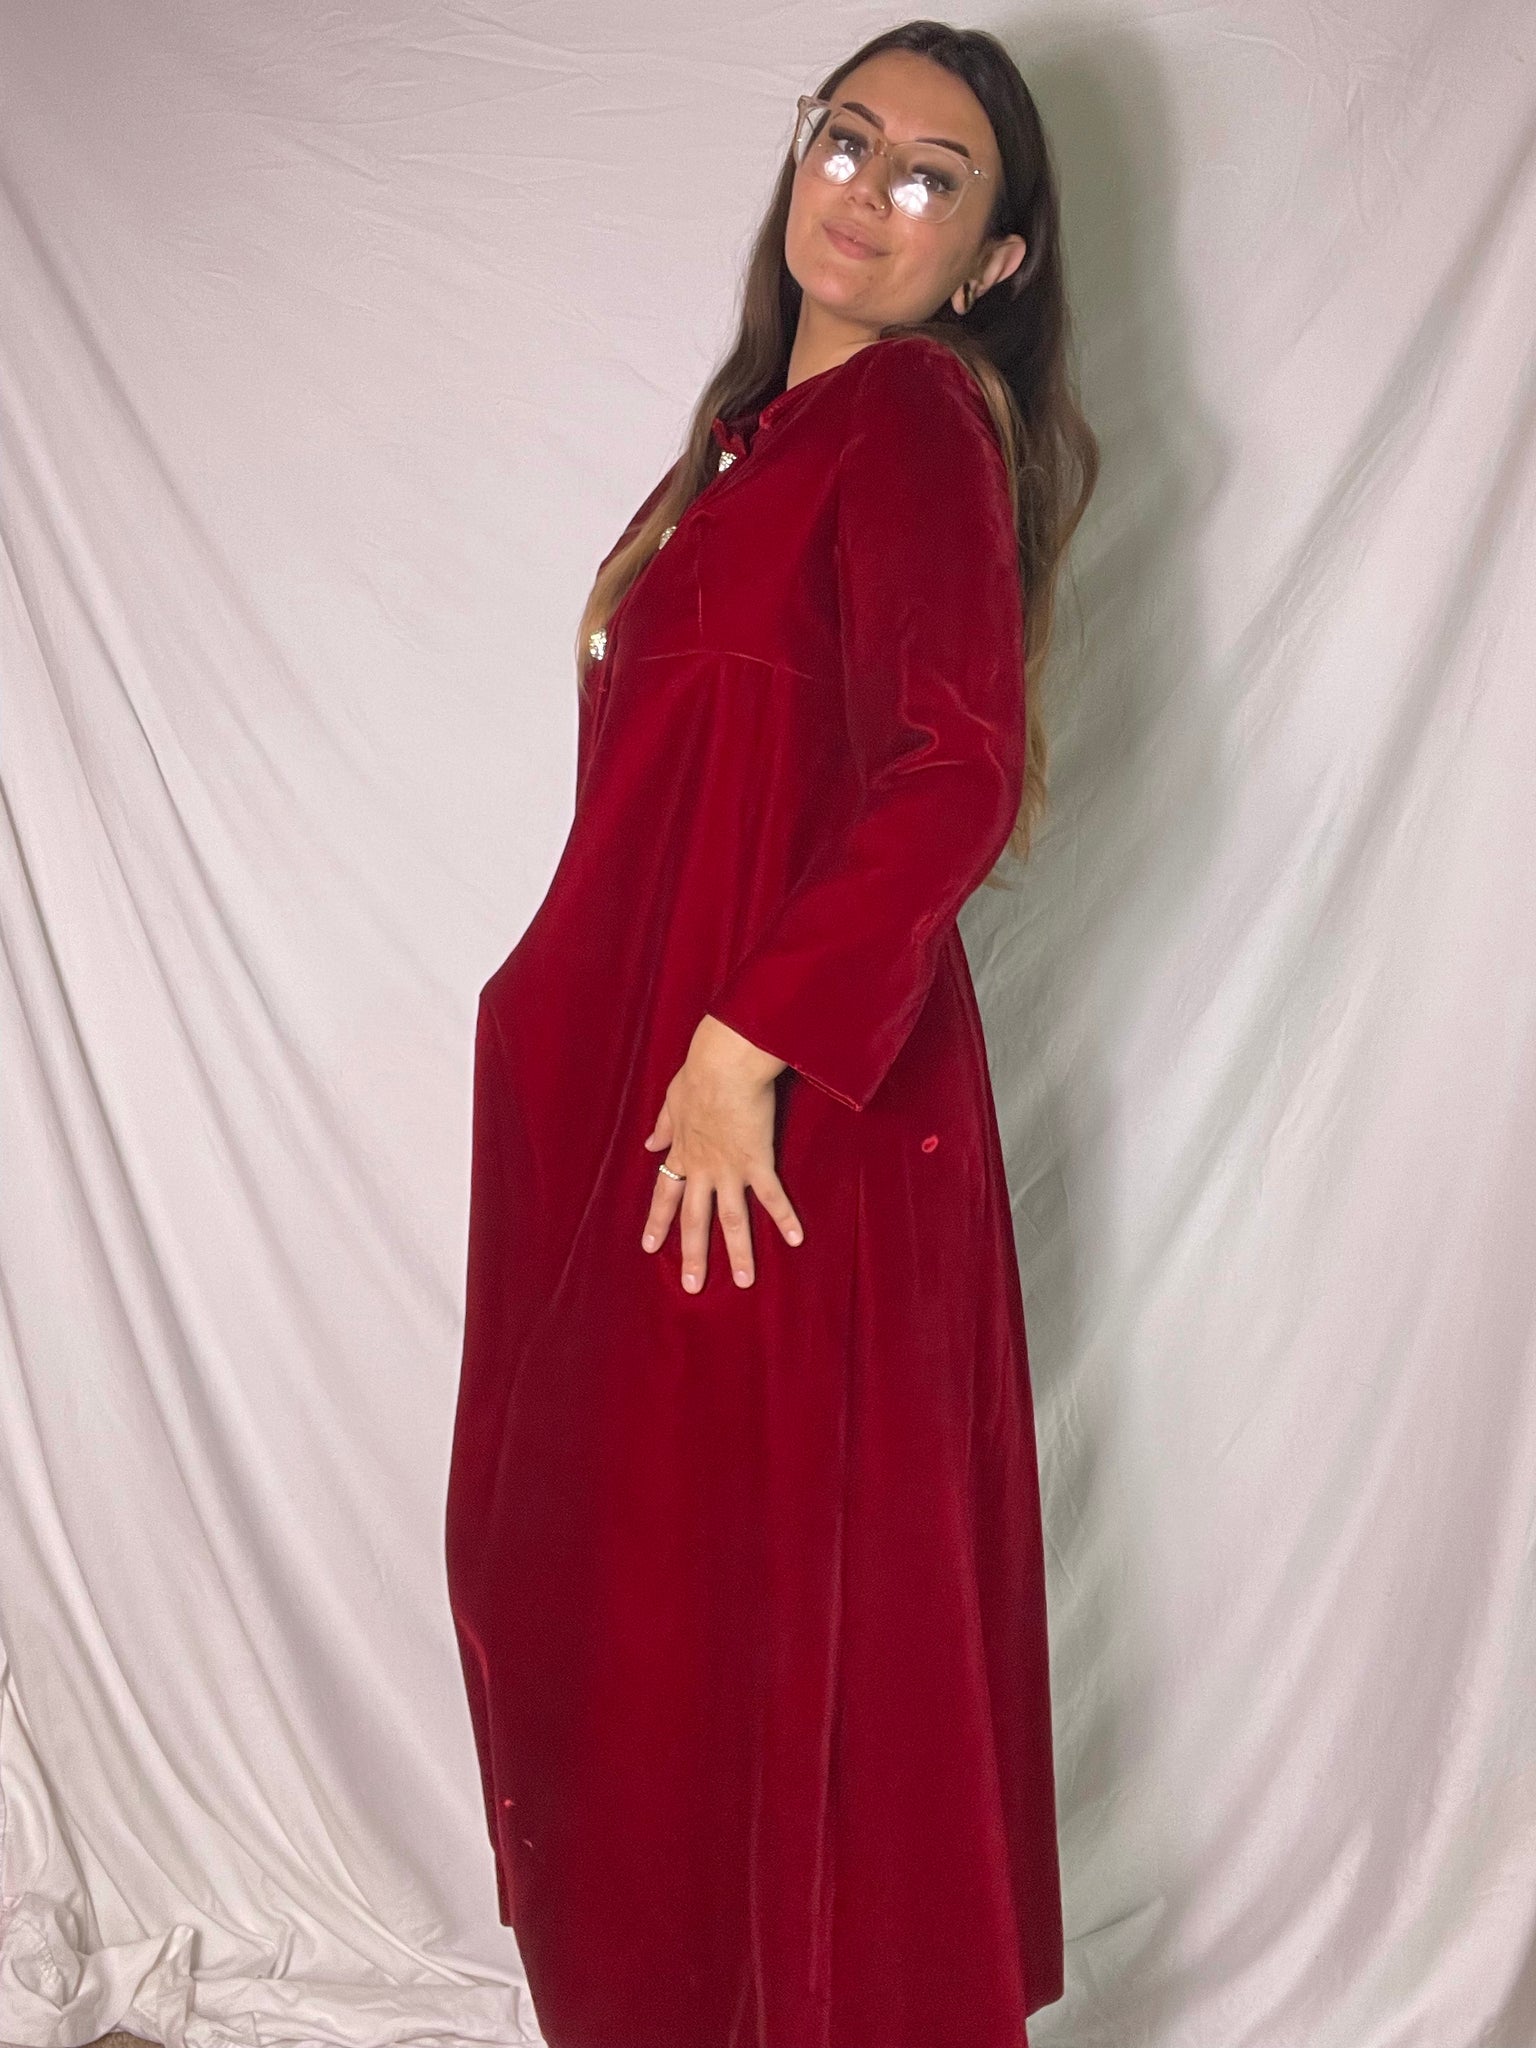 60s red velvet opera coat, Size M